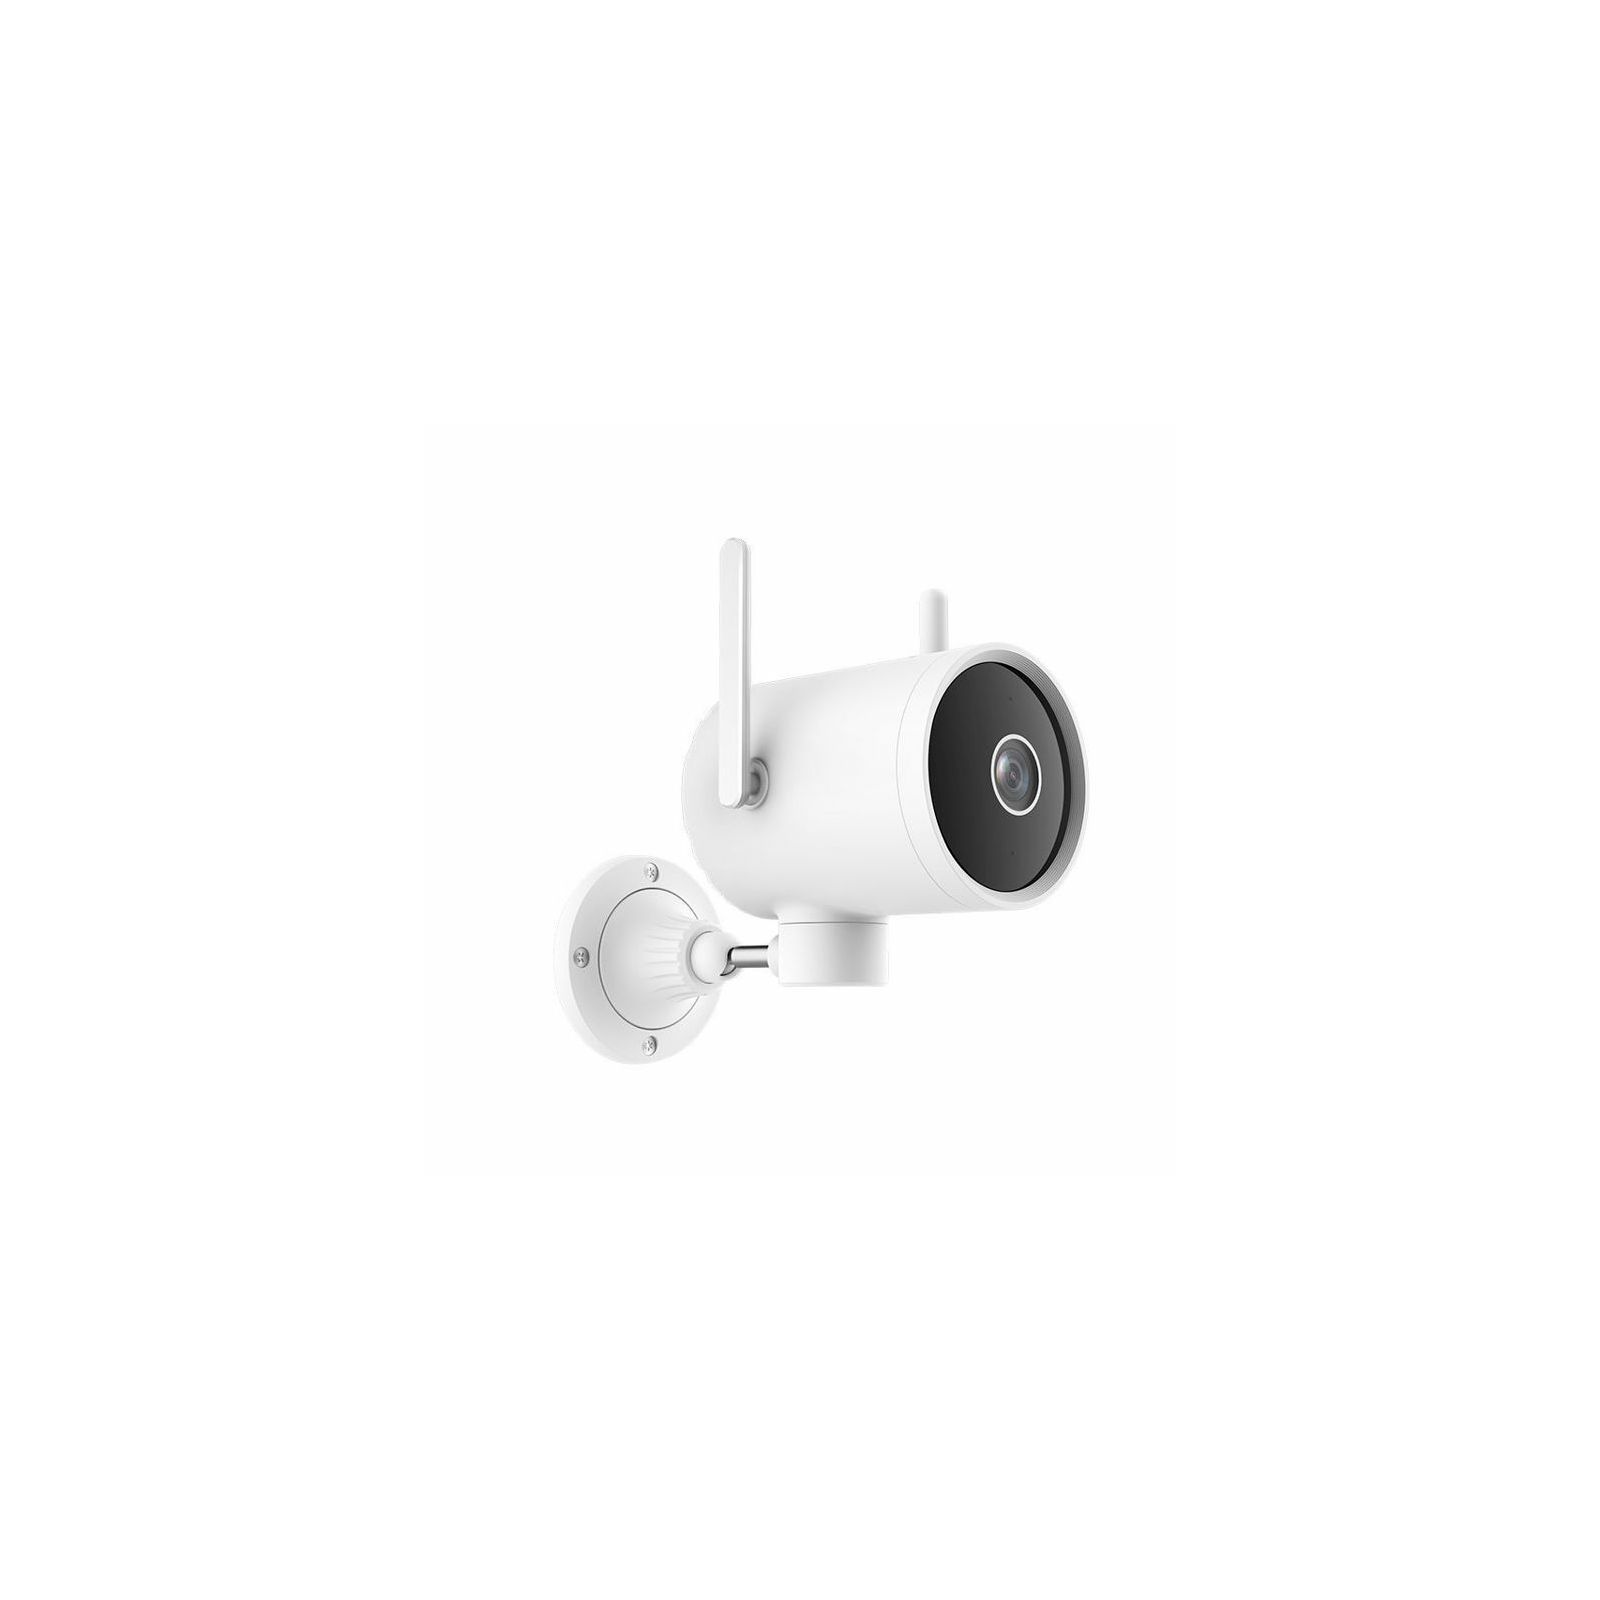 nadzorna-kamera-imilab-ec3-pro-outdoor-security-camera--505619_45909.jpg